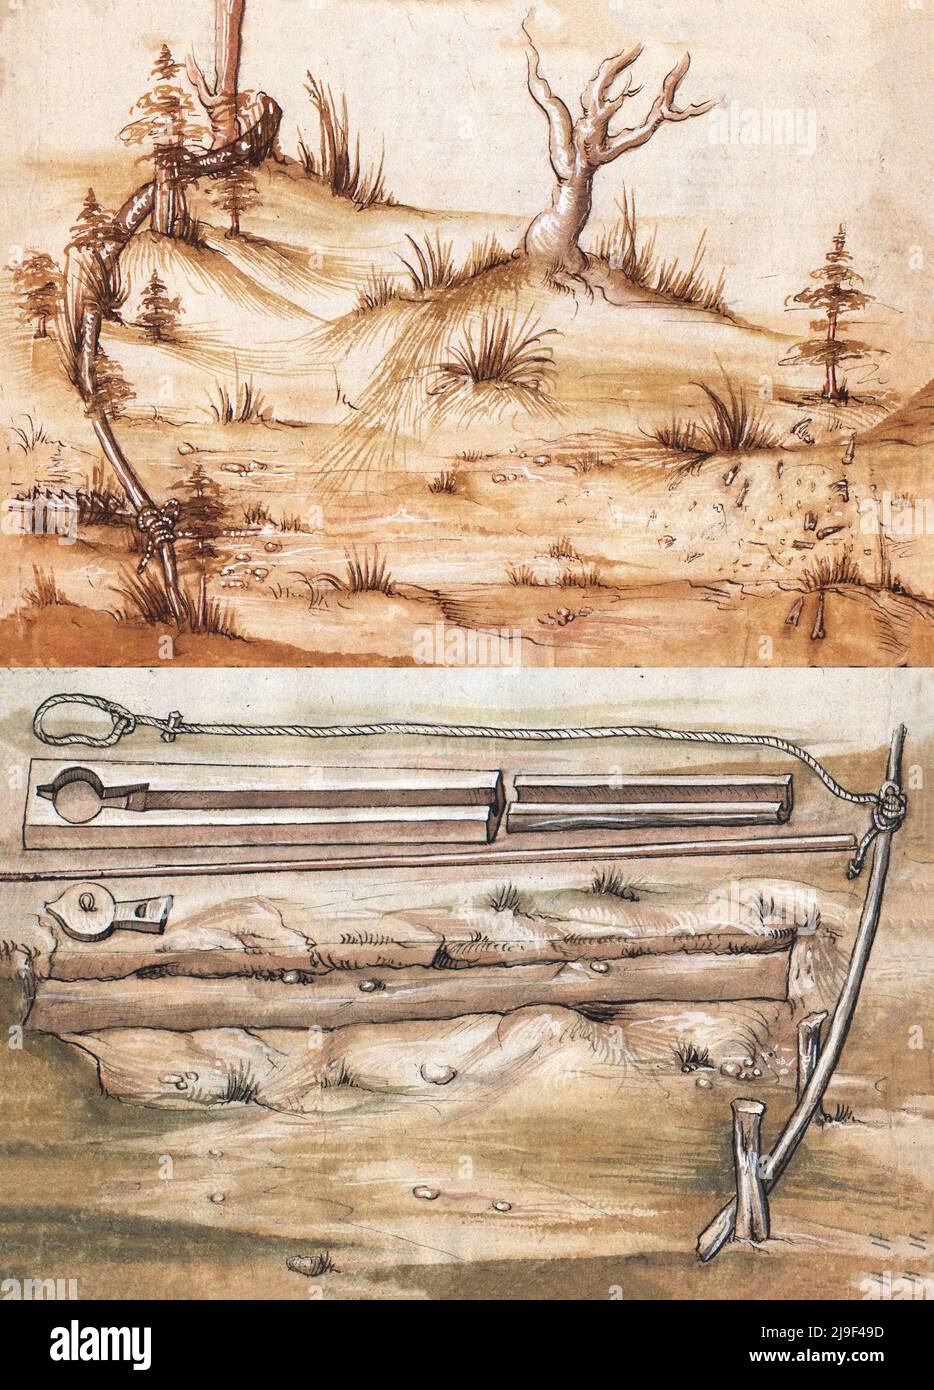 Illustrazione medievale di trappole (arte della guerra). Gli strumenti di Martin Löffelholz (1505) Löffelholtz Codex. Illustrazioni e descrizioni di tutti i tipi di h Foto Stock